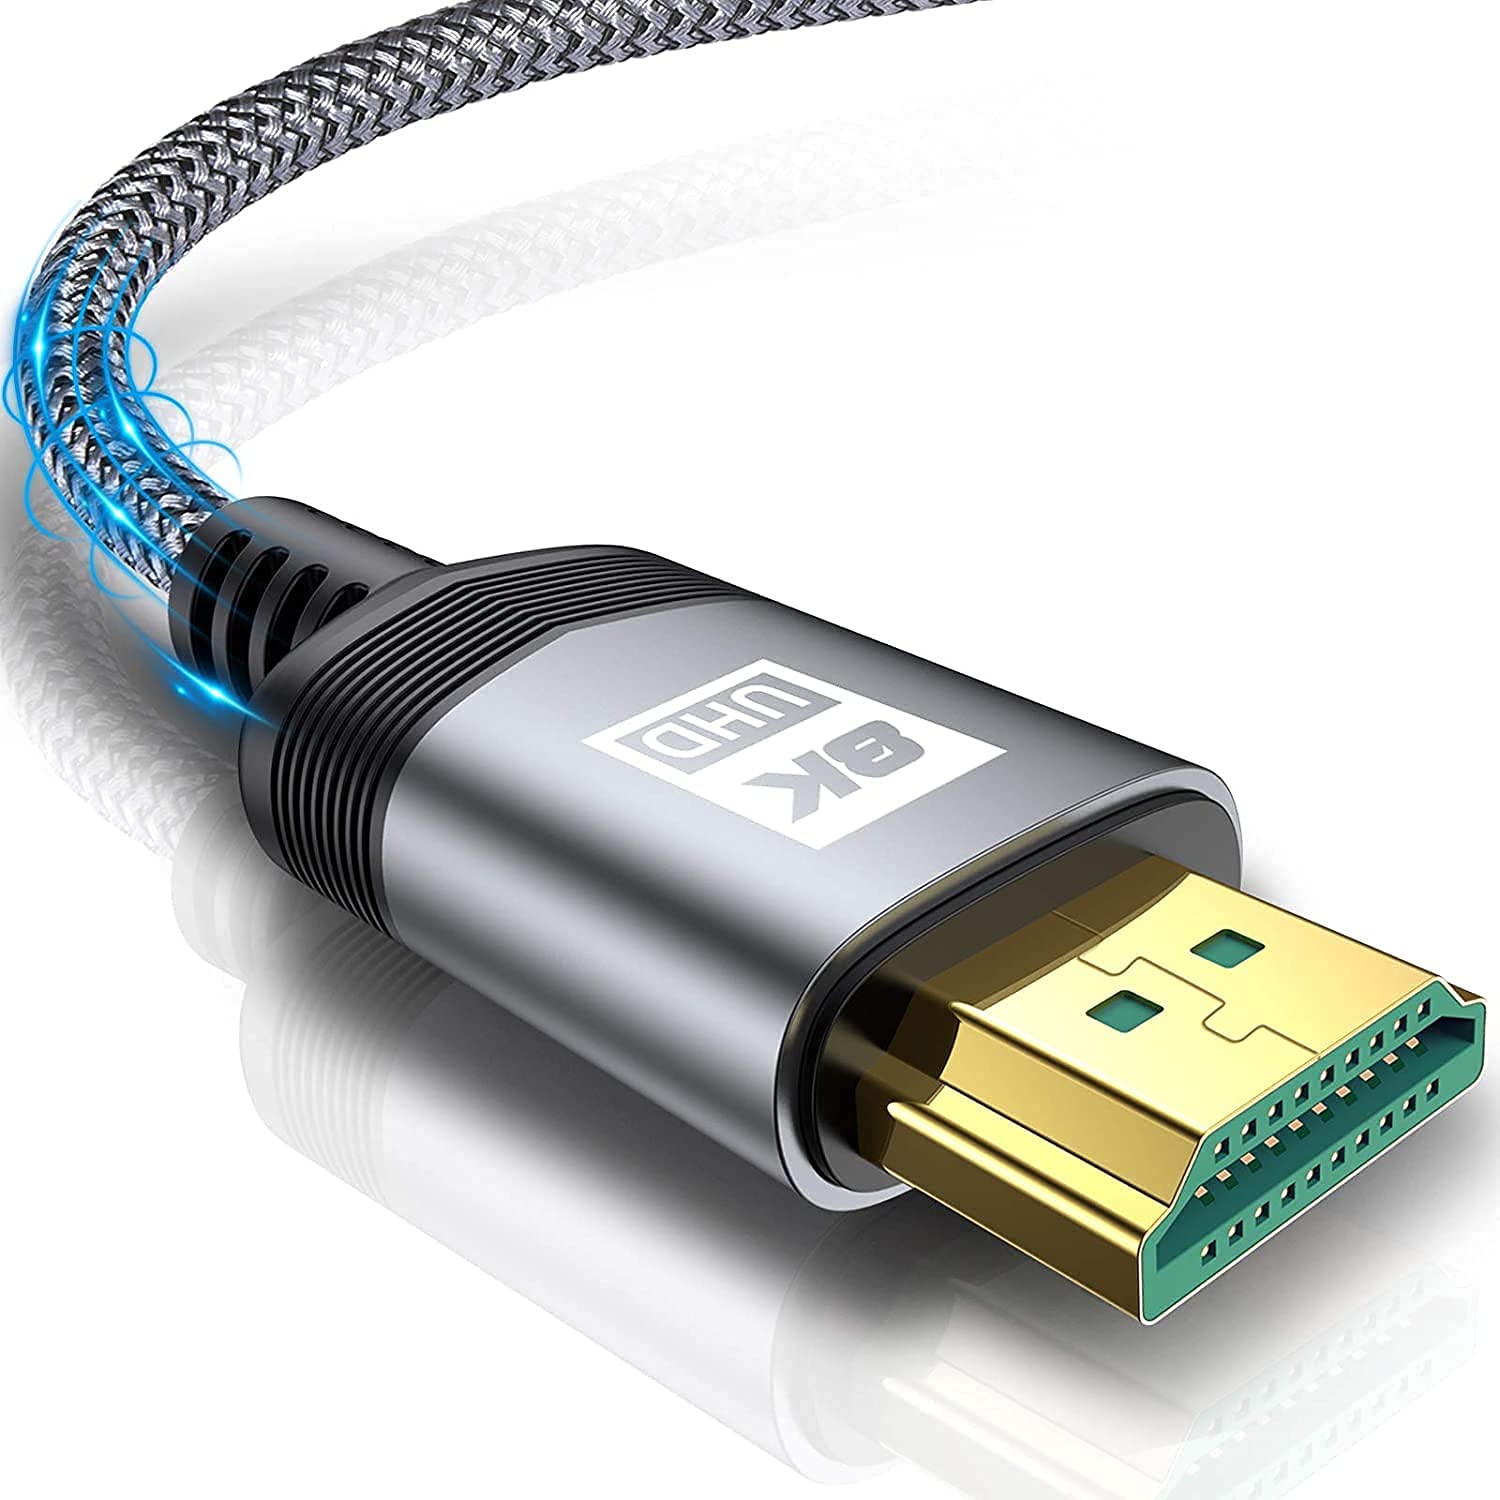 8K HDMI ケーブル 7.5Meter ハイスピード 48Gbps HDMI 2.1規格HDMI Cable 8K@60Hz 4K@120Hz/144Hz 7680x4320p 超高速 UHD HDR HDCP eARC 3Dイーサネット ARC hdmi ケーブル - 8K対応 Apple TV,PS5/PS4, PCモニター,Nintendo Switchなど適用 (グレー)